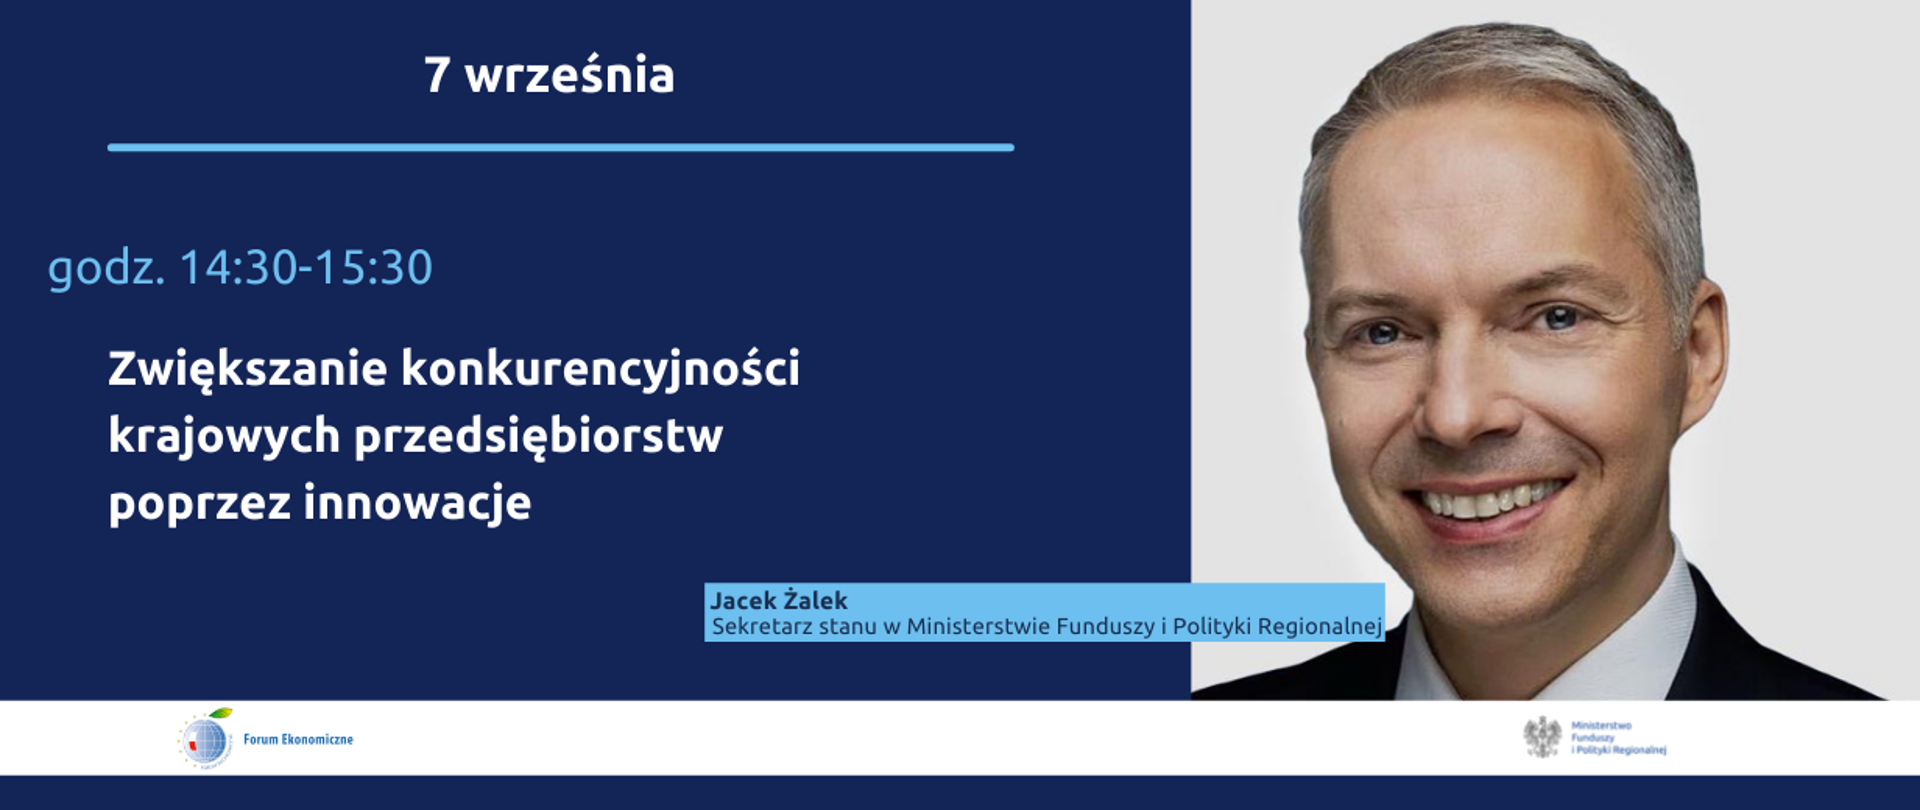 Zwiększanie konkurencyjności krajowych przedsiębiorstw poprzez innowacje, 7 września, godz. 14.30-15.30, wiceminister Jacek Żalek